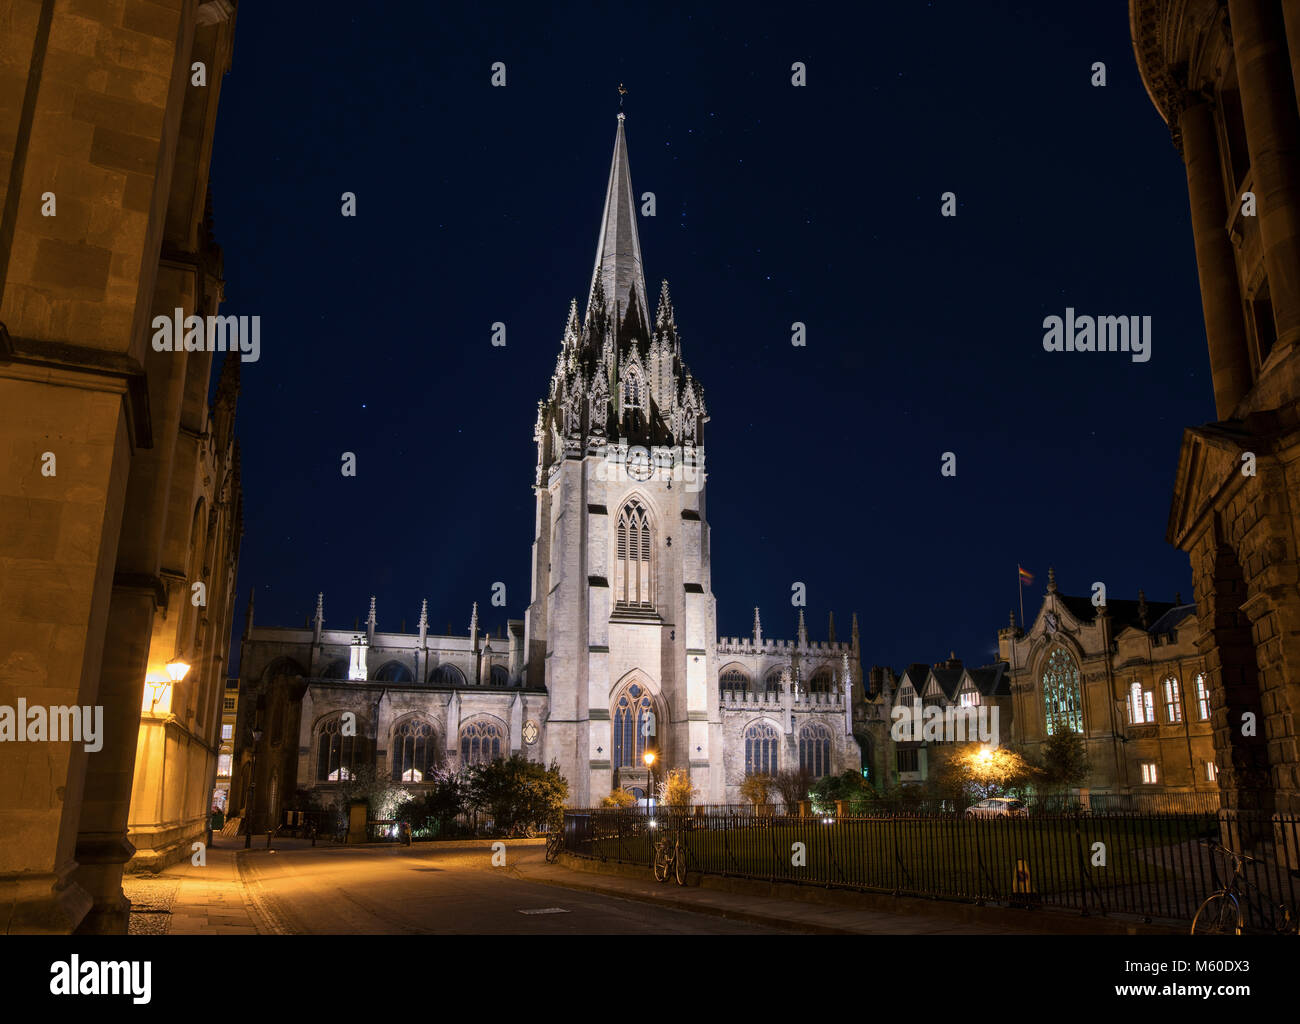 Église universitaire de Sainte Marie la Vierge la nuit. Catte Street, Oxford, Oxfordshire, Angleterre Banque D'Images